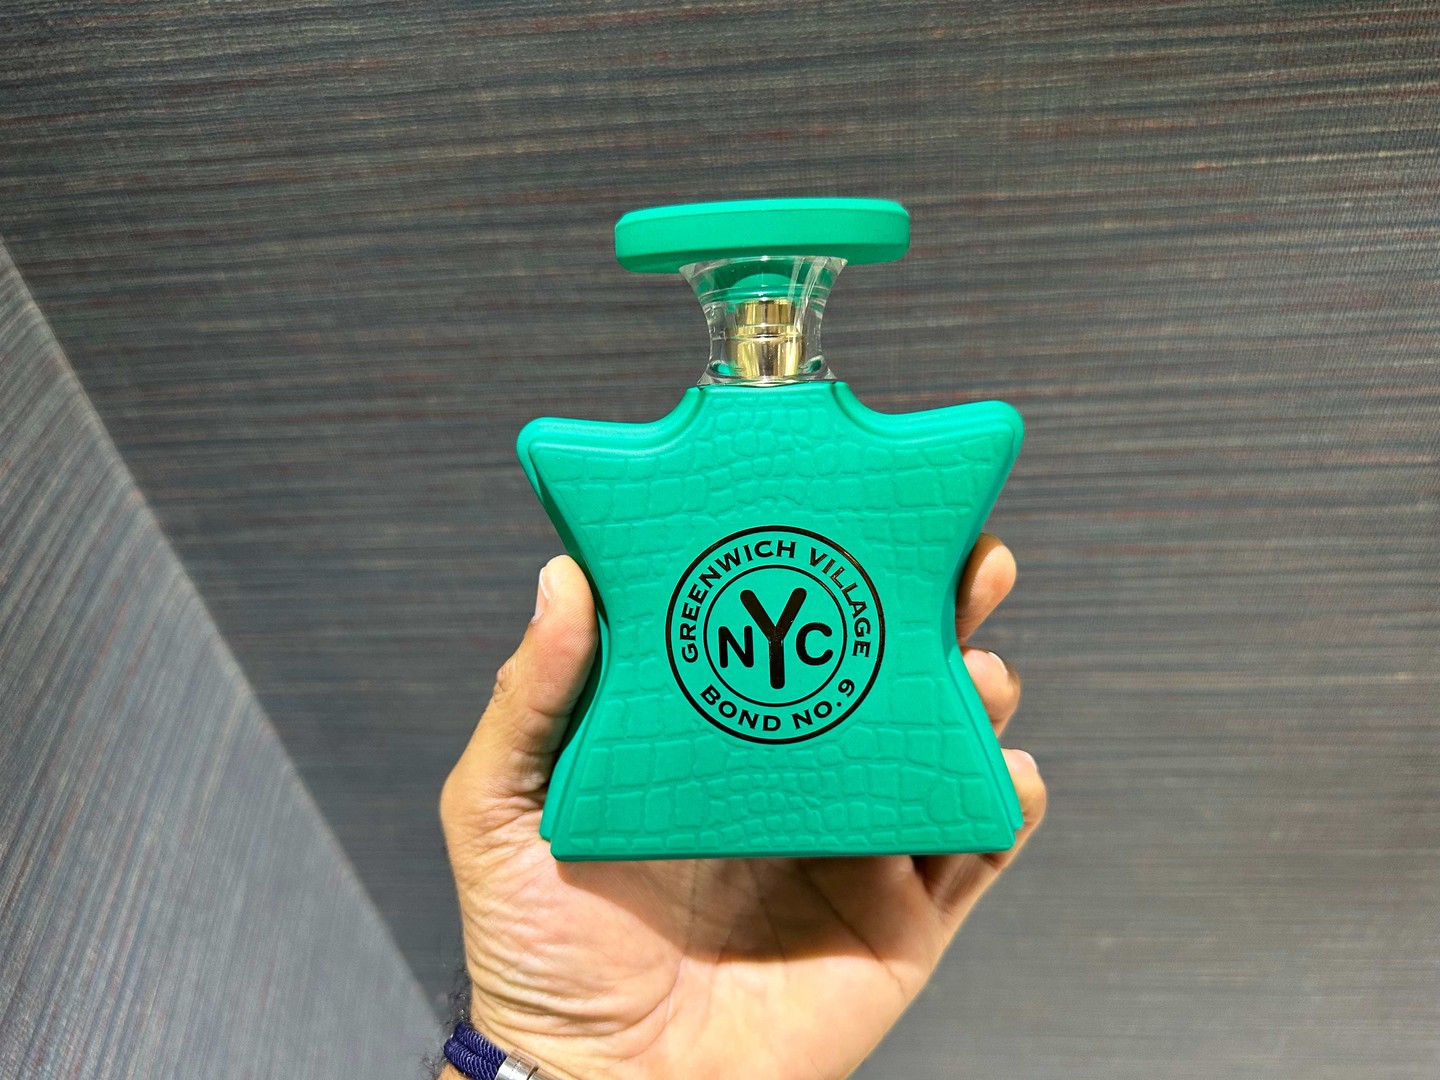 joyas, relojes y accesorios - Perfumes Bond NO.9 Greenwich Village NYC Nuevo 100% Original RD$ 17,500 NEG